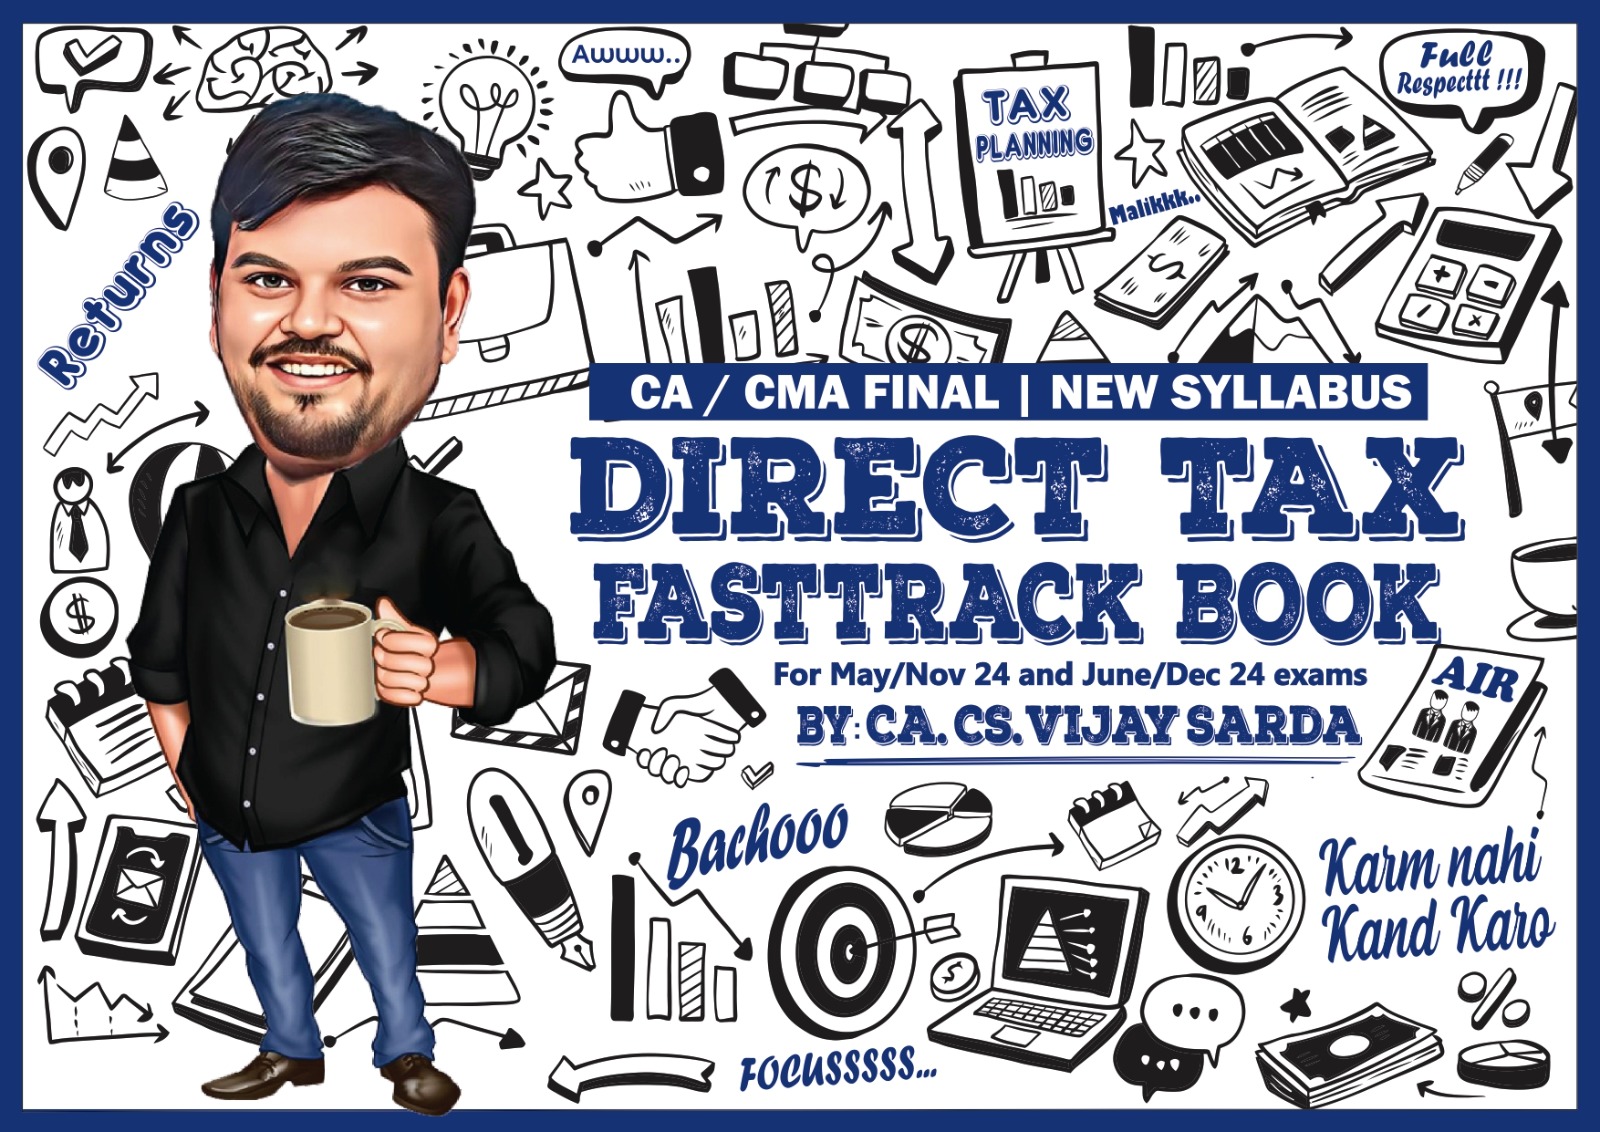 ca-final-dt-fastrack-book-by-ca-vijay-sarda